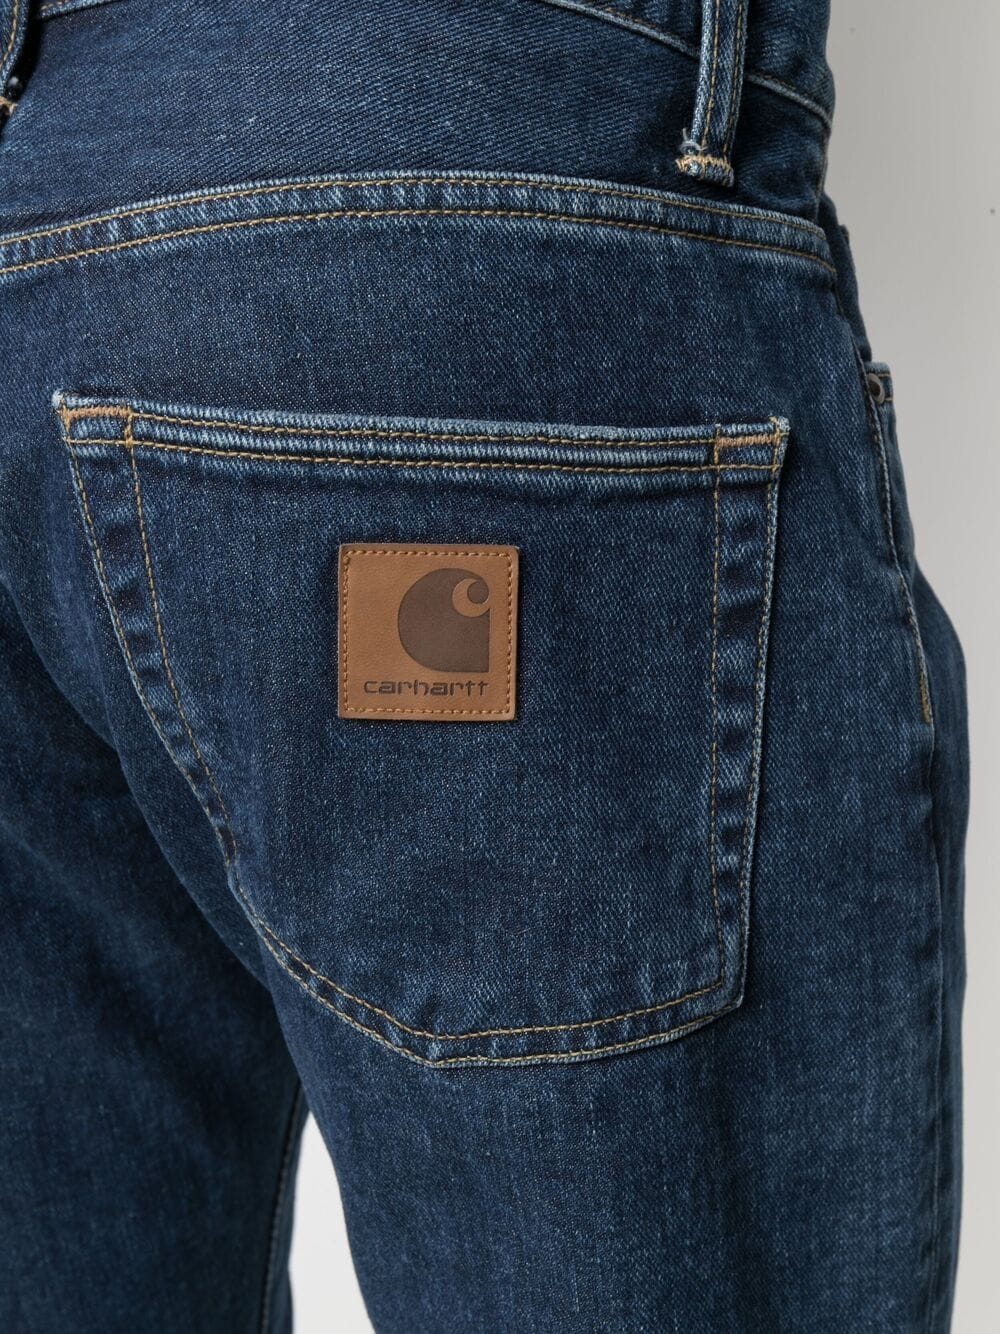 фото Carhartt wip джинсы кроя слим с завышенной талией